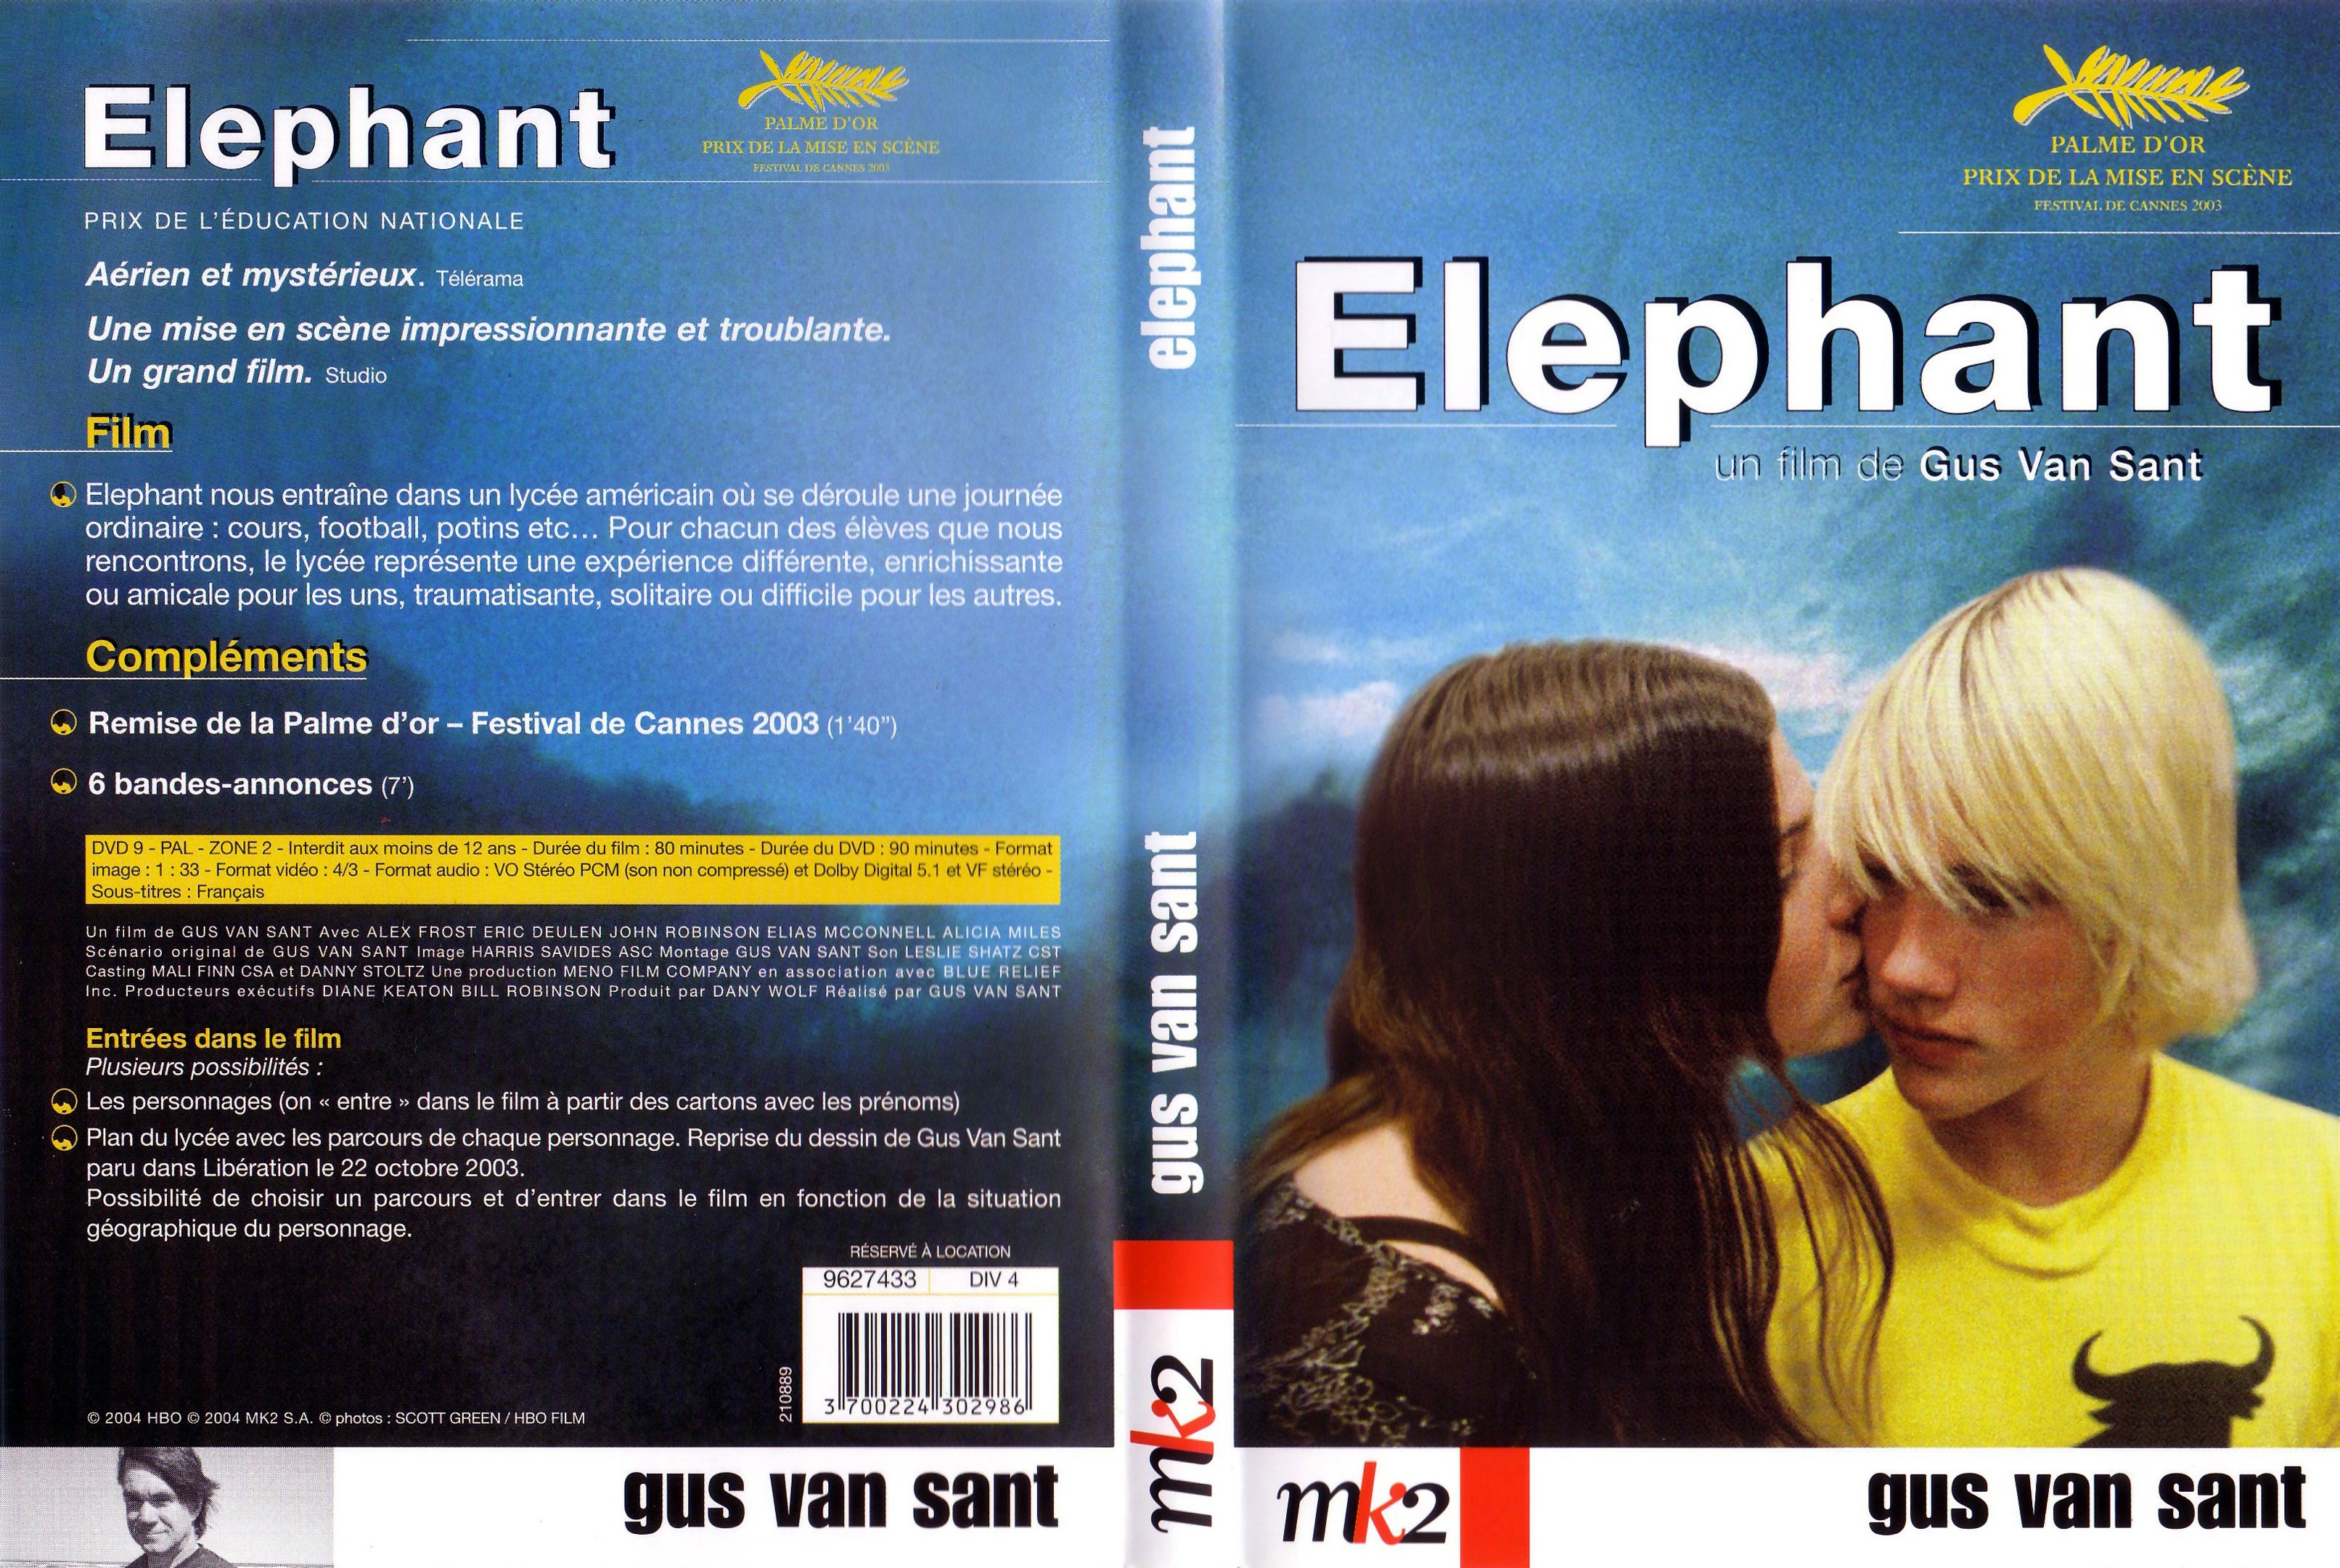 Jaquette DVD Elephant v3